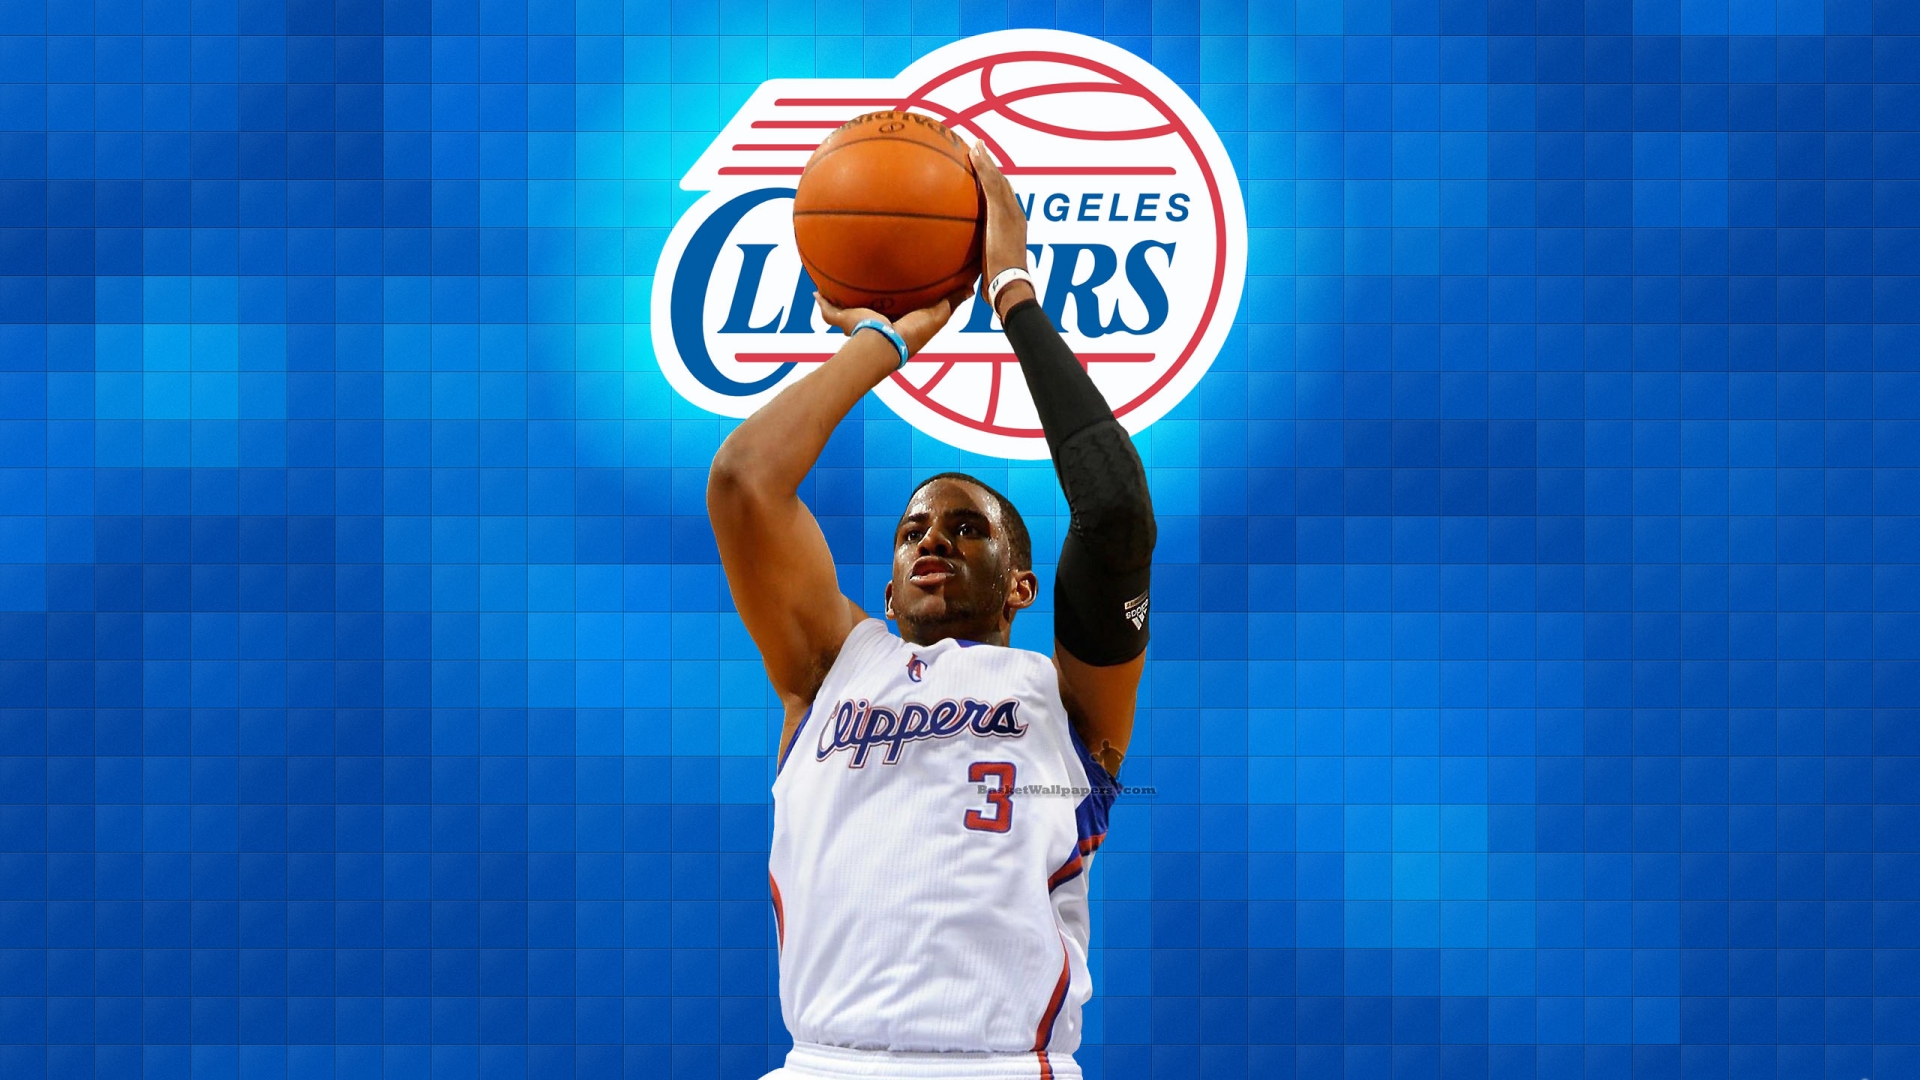 Chris Paul LA Clippers 2012 NBA Wallpaper